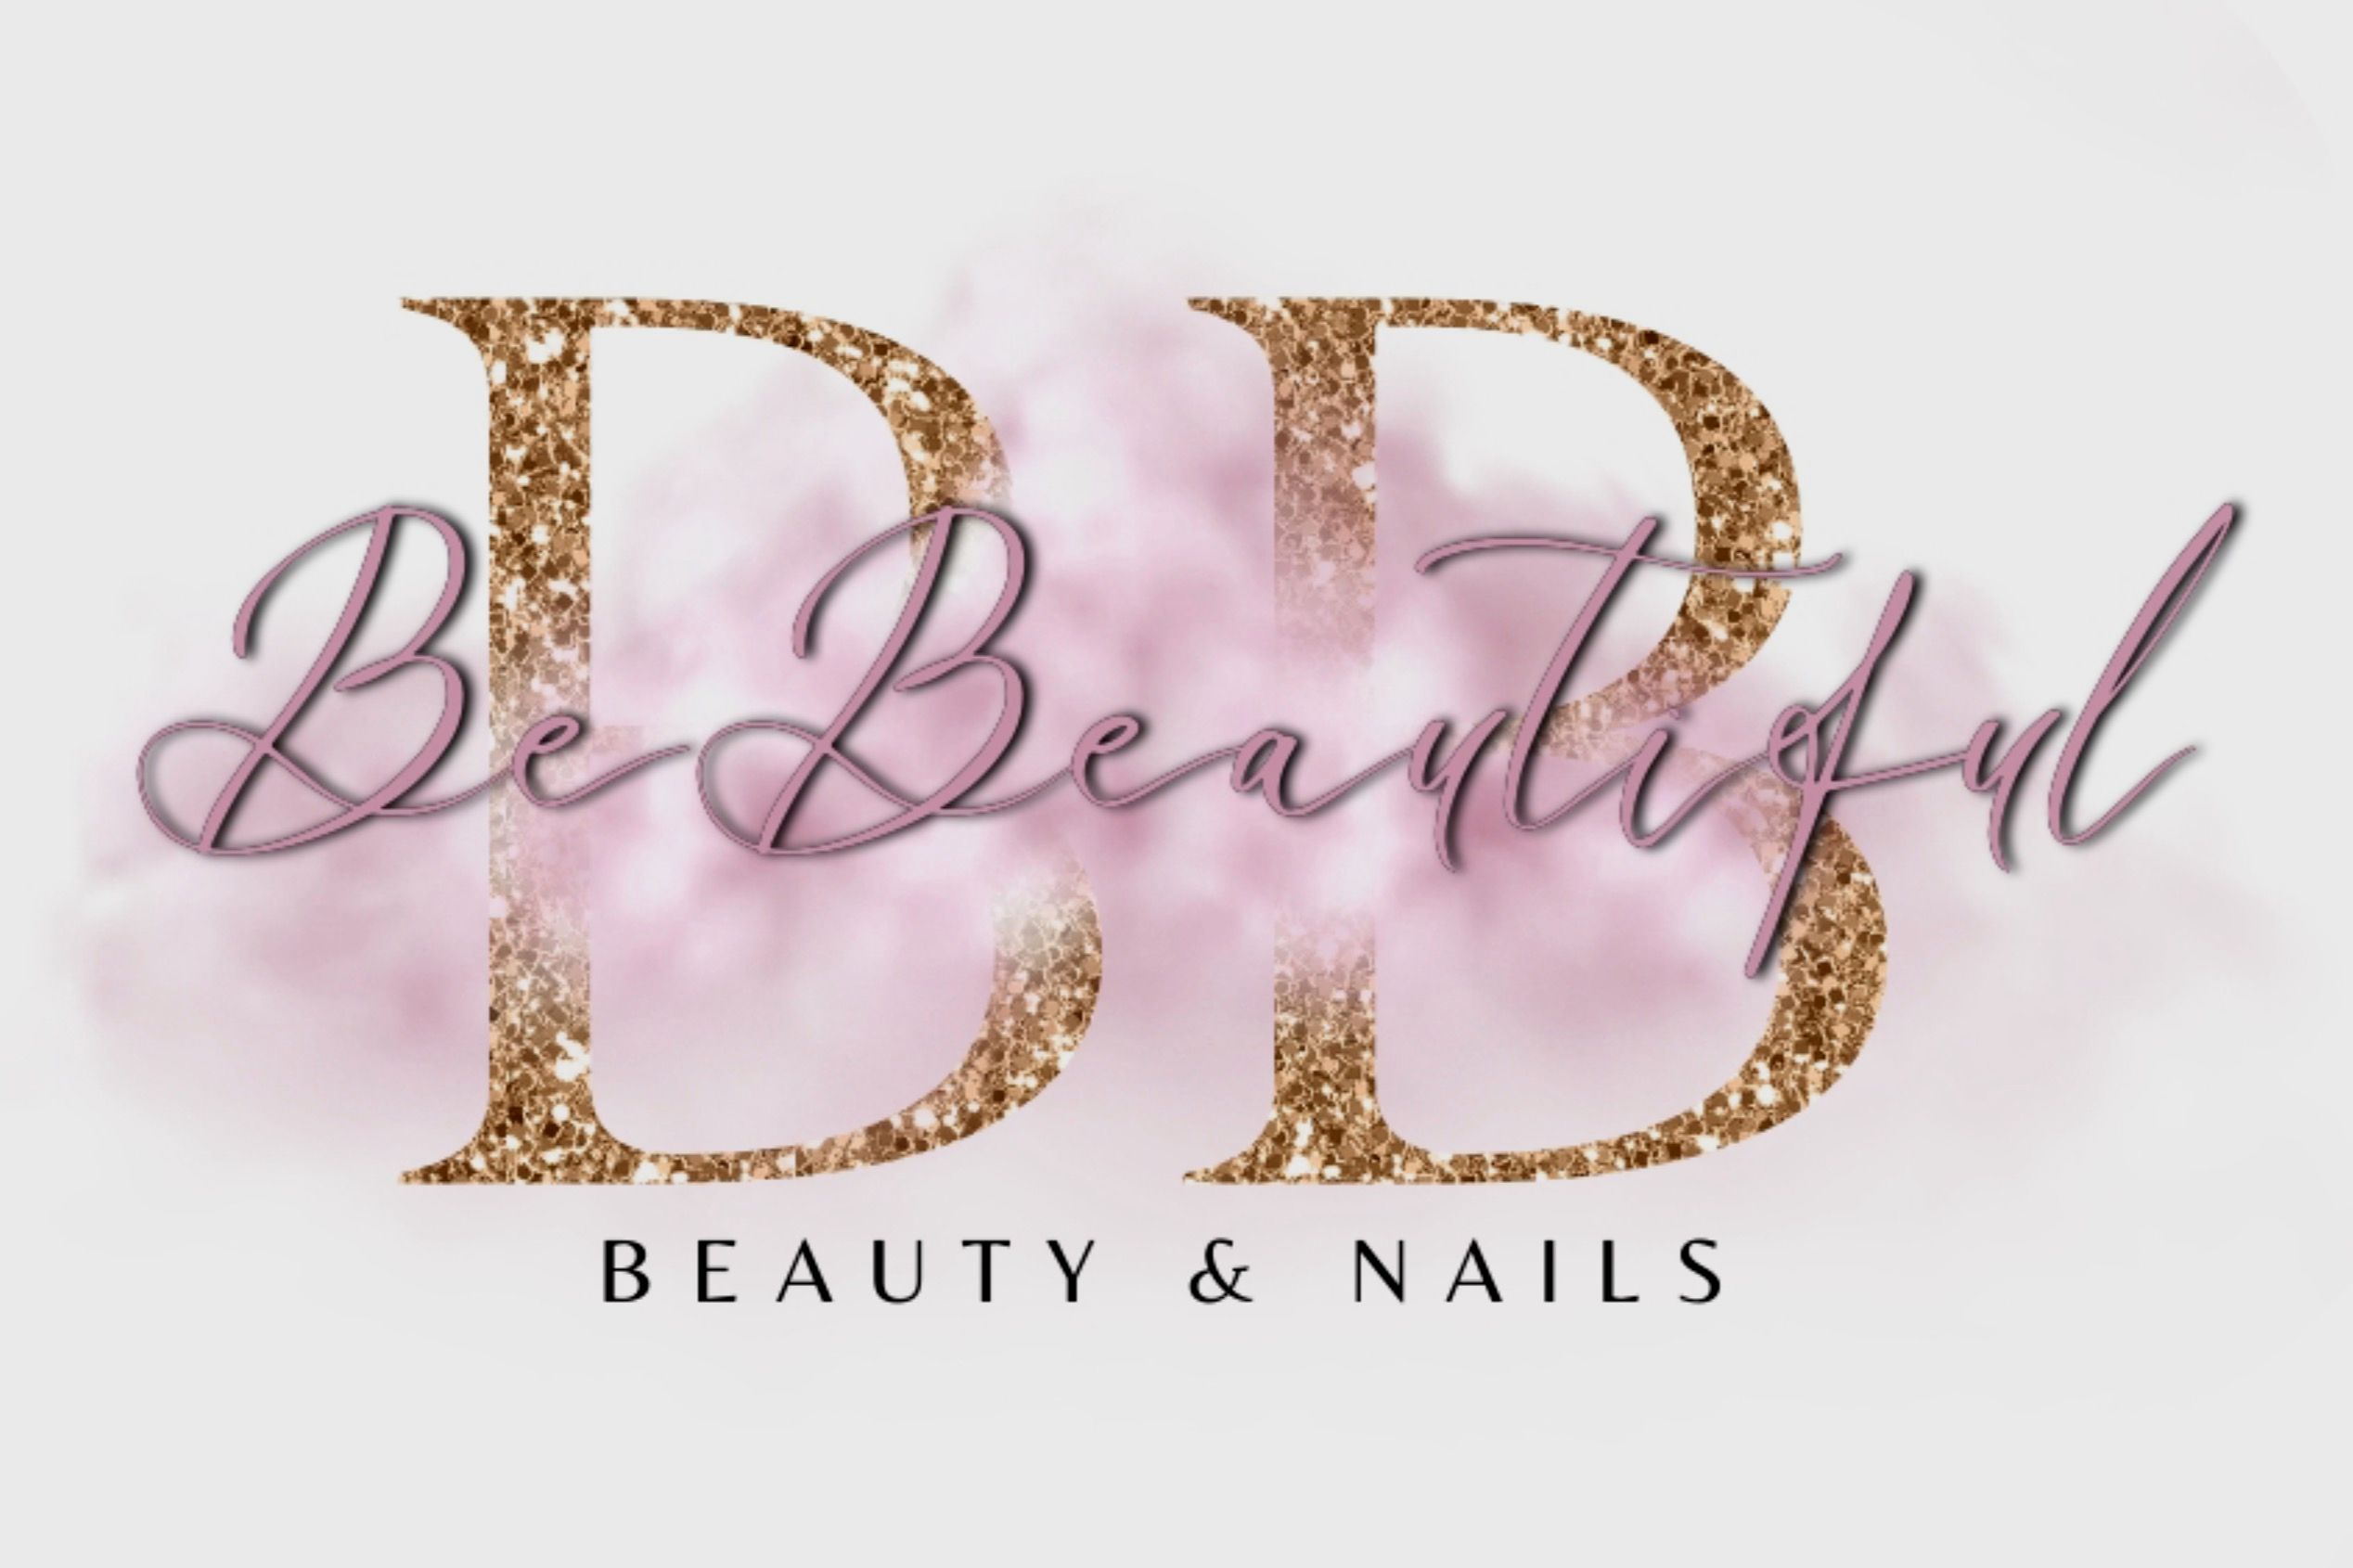 BeBeautiful- Beauty & Nails